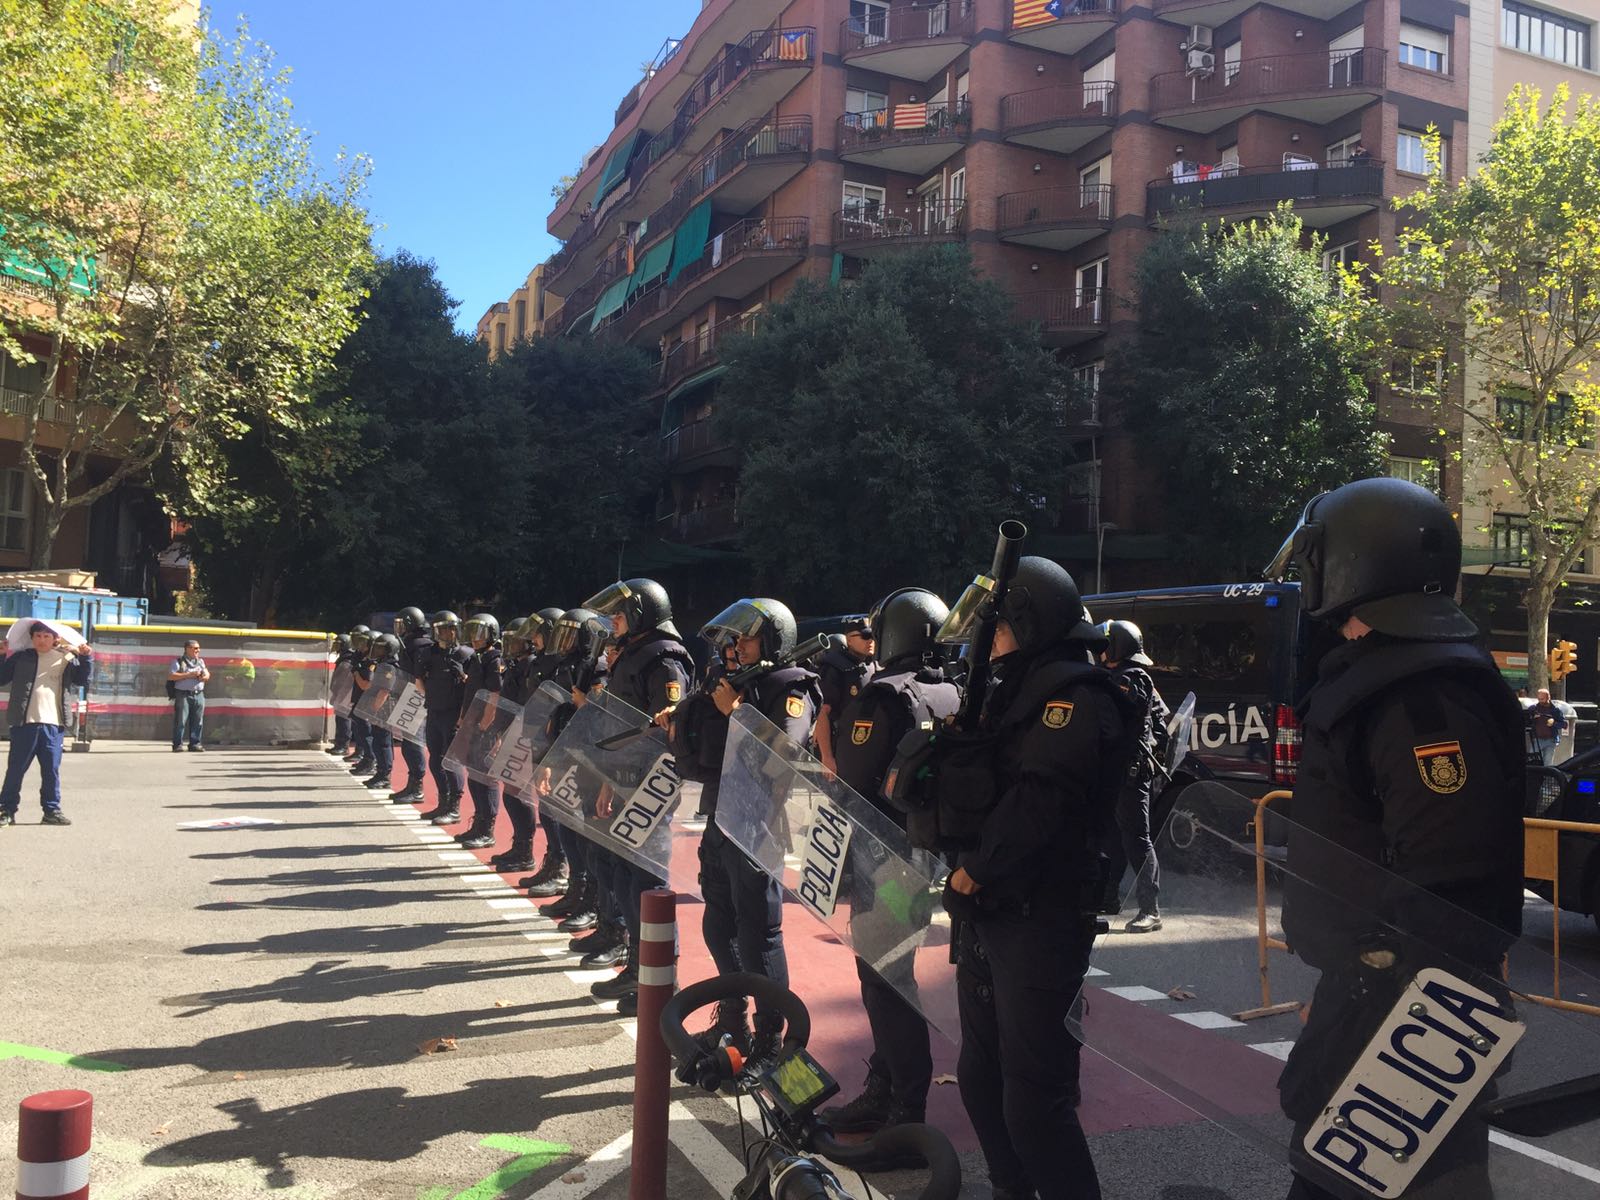 La CUP expulsa a la Policía de su sede: "Quienes hemos resistido, hemos ganado"